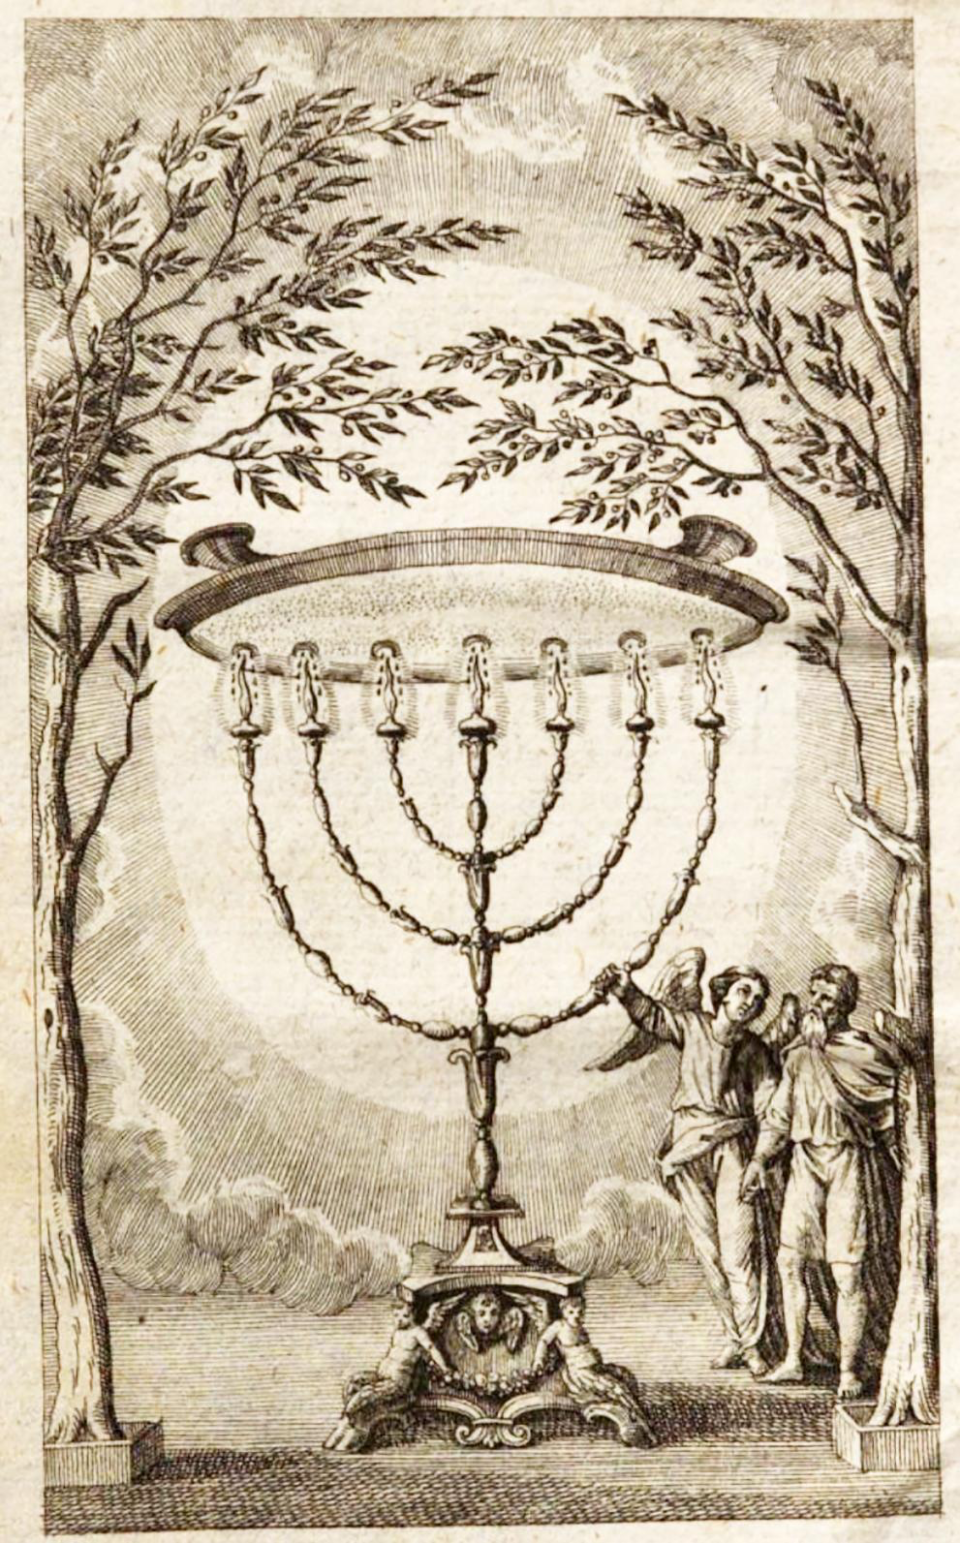 Le chandelier secret ("Perspective sur la magie", Karl von Eckhartshausen)